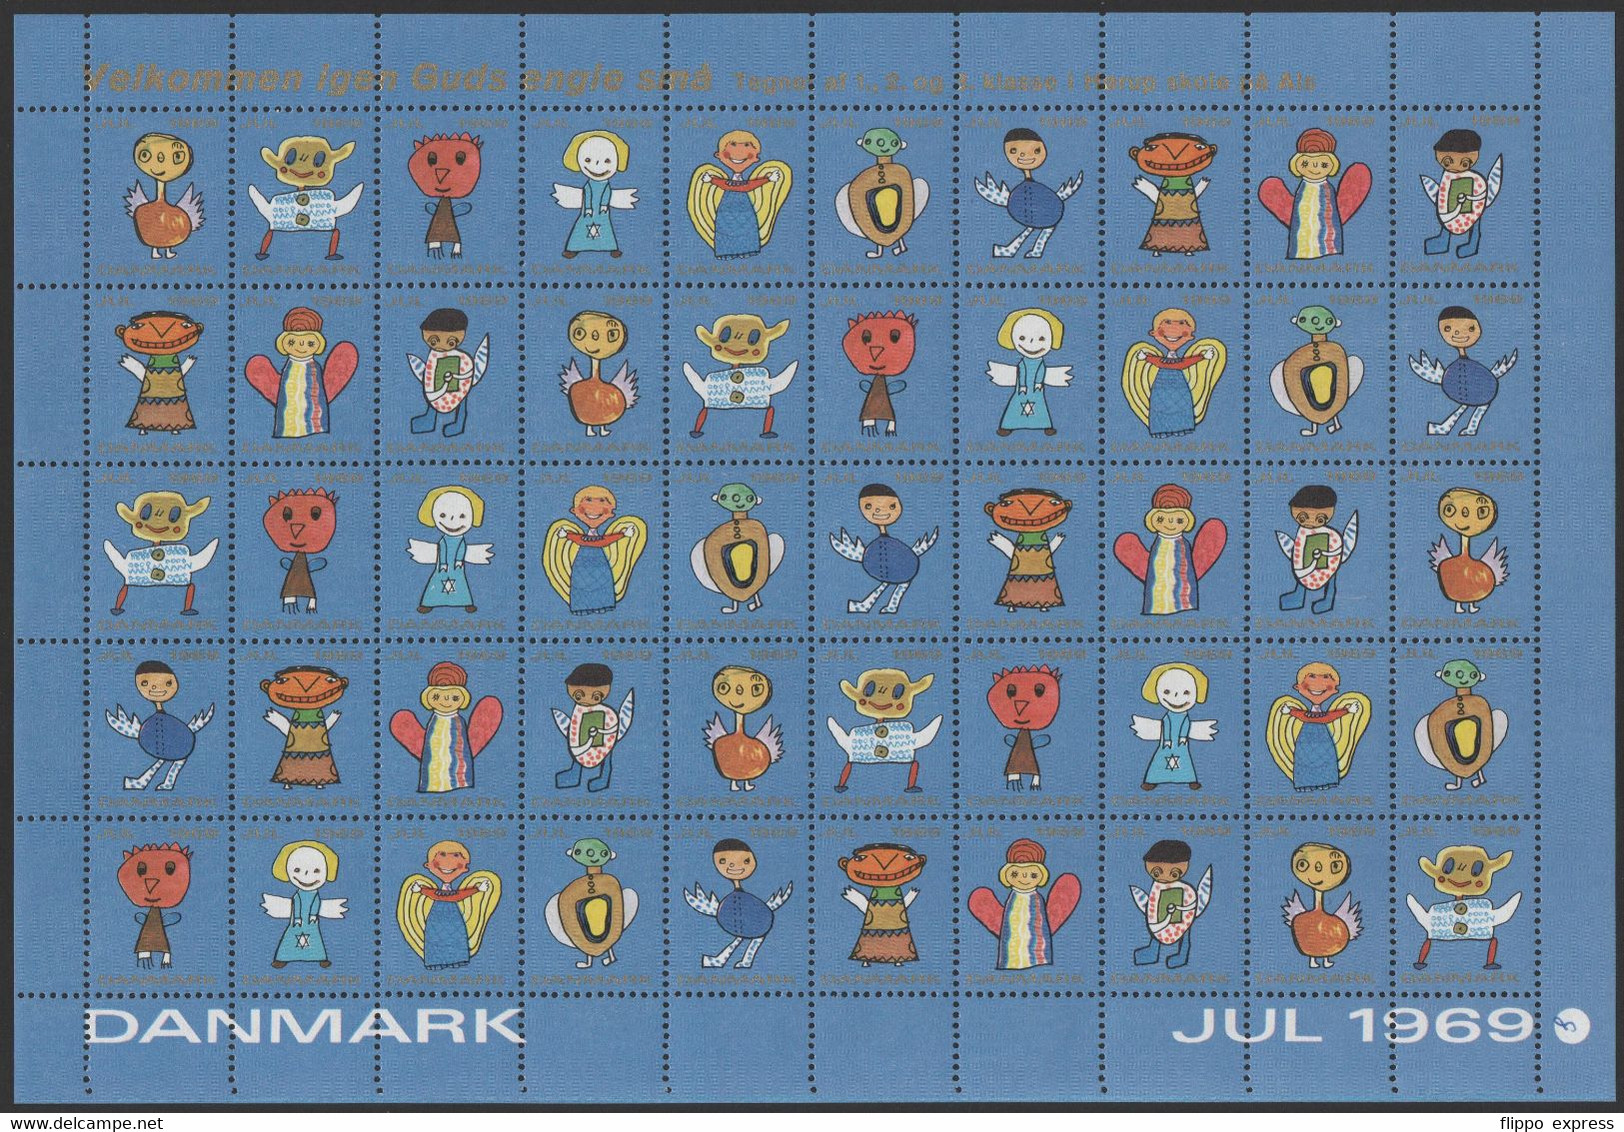 Denmark1969 Julemaerke, Mint Sheet Of 50 Stamps, Unfolded. - Ganze Bögen